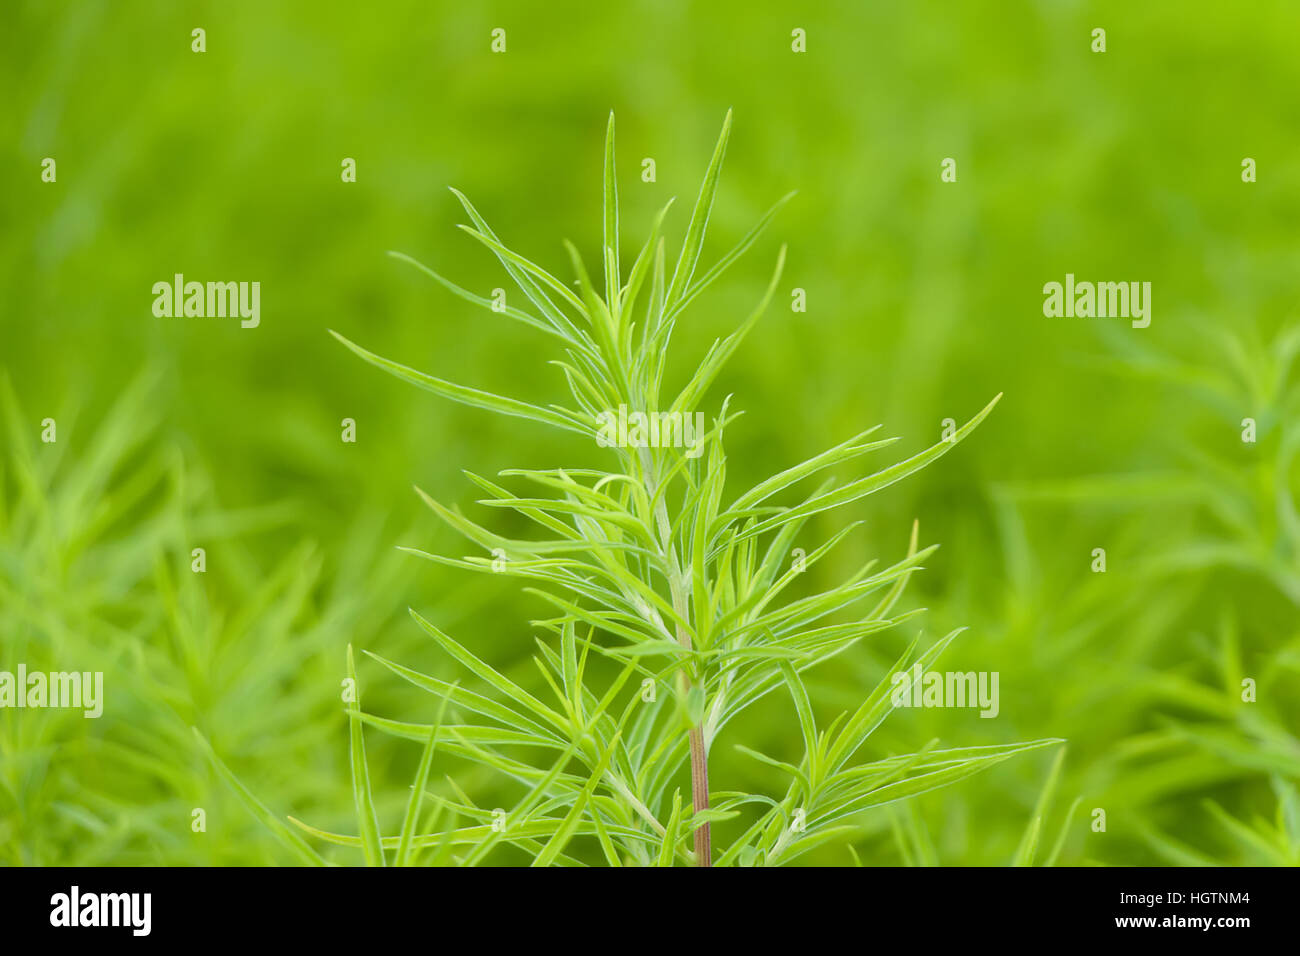 Abstrakten grünen Vegetation Bild mit unscharfen Hintergrund Stockfoto